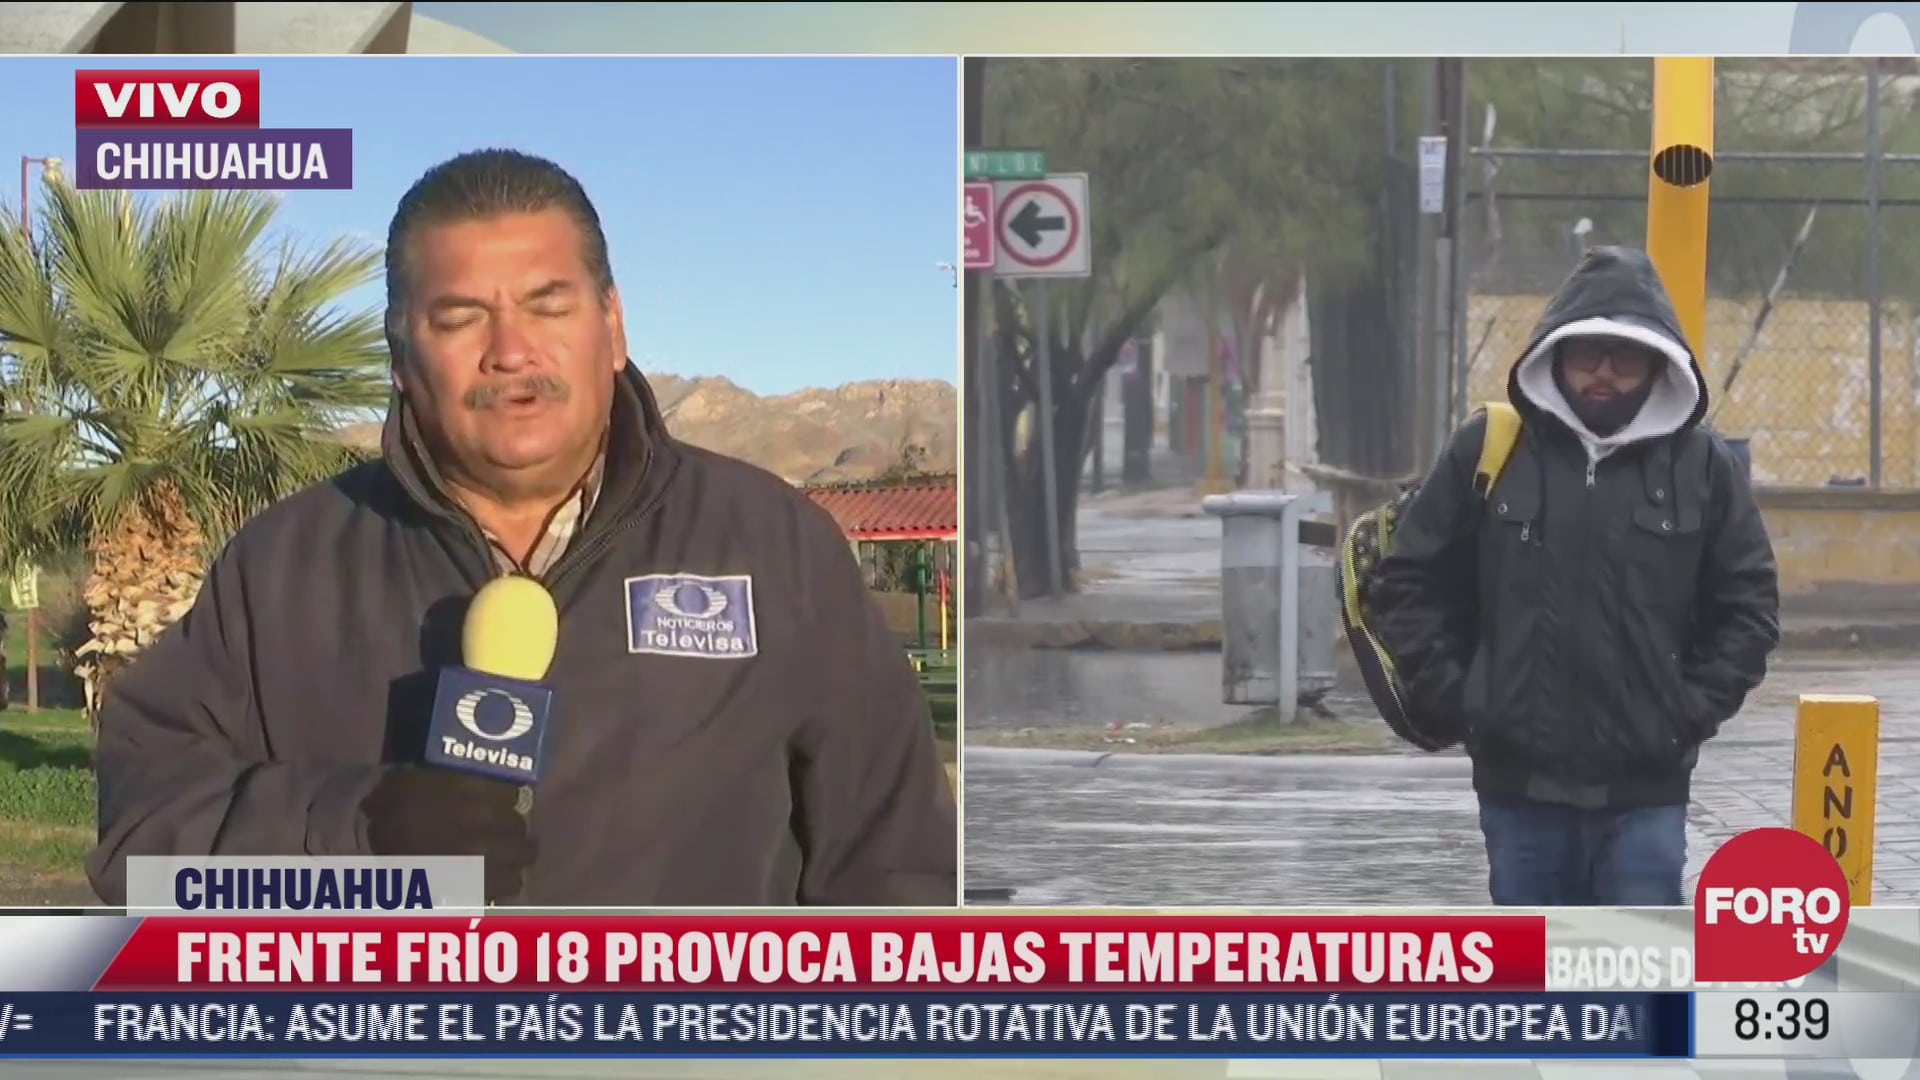 frente frio numero 18 provoca bajas temperaturas en chihuahua